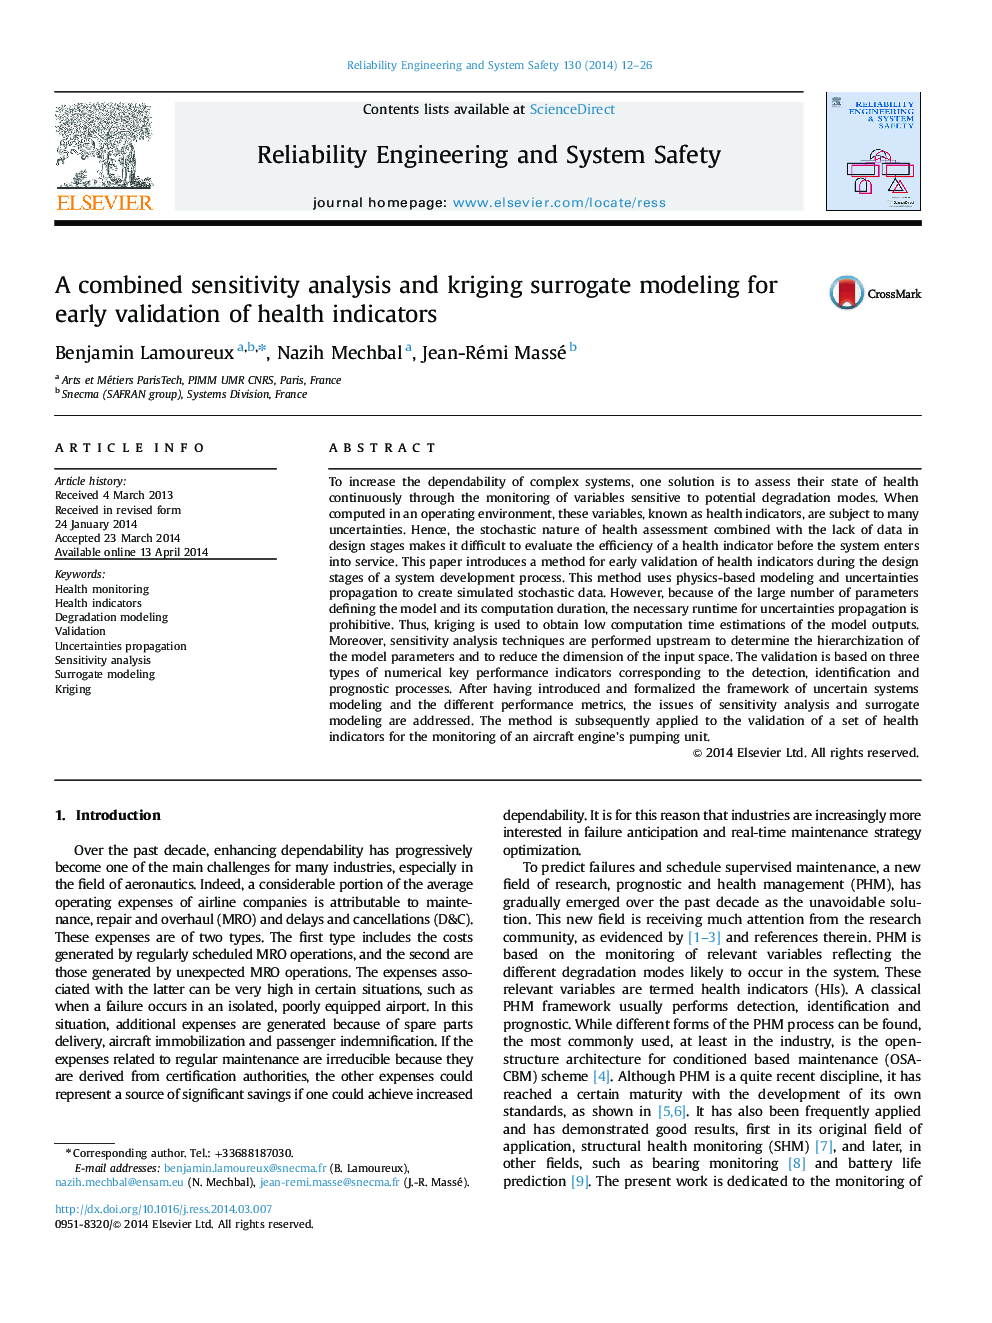 تجزیه و تحلیل حساسیت ترکیبی و مدل سازی کریجینگ جایگزین برای اعتبار سنجی زودهنگام شاخص های سلامت 